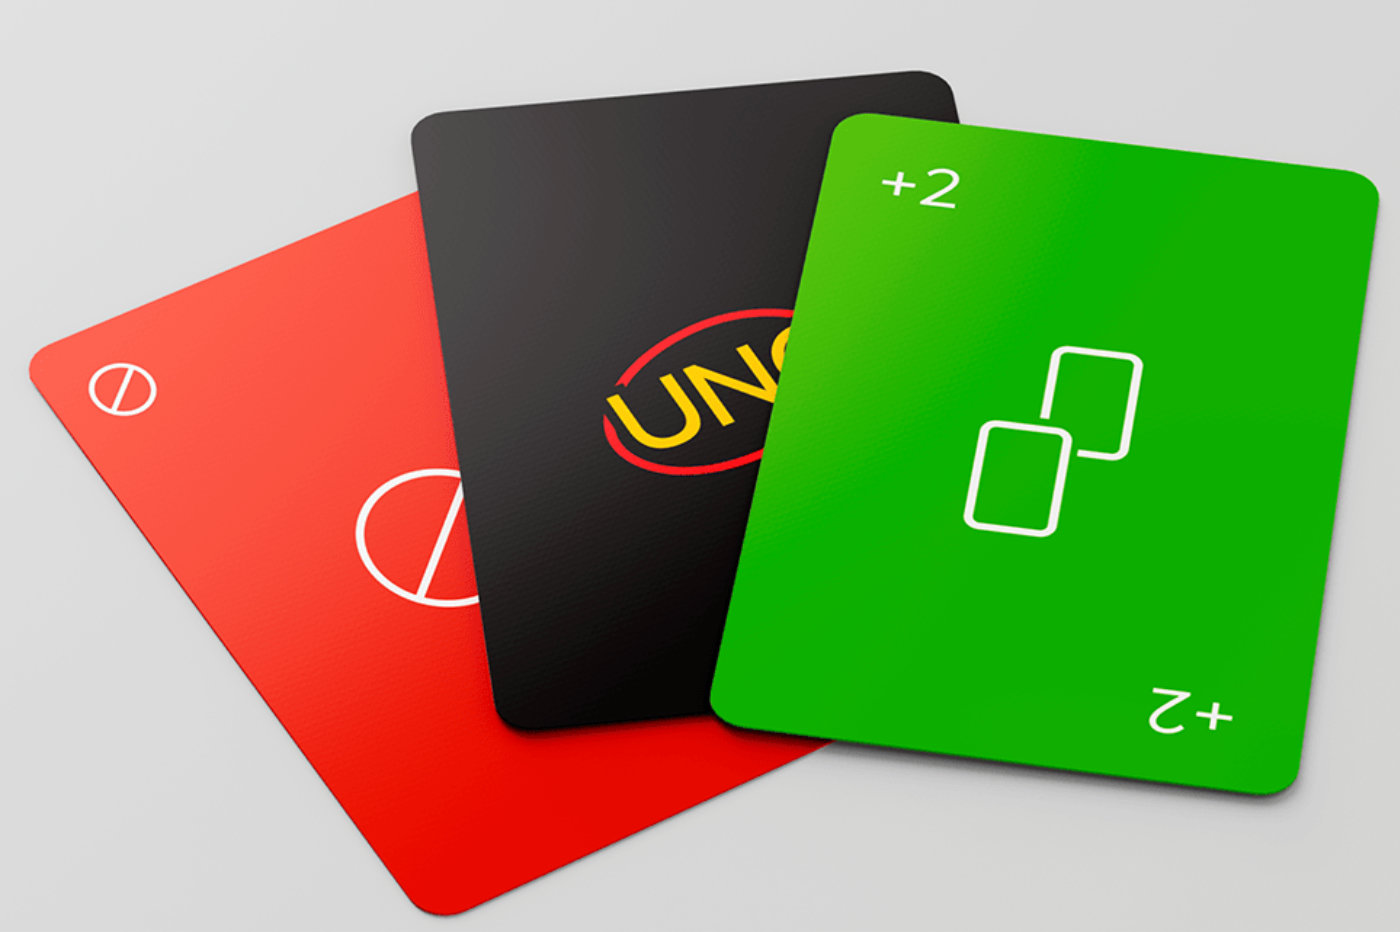 Artista brasileiro faz redesign minimalista do jogo Uno, e protótipo se  torna produto